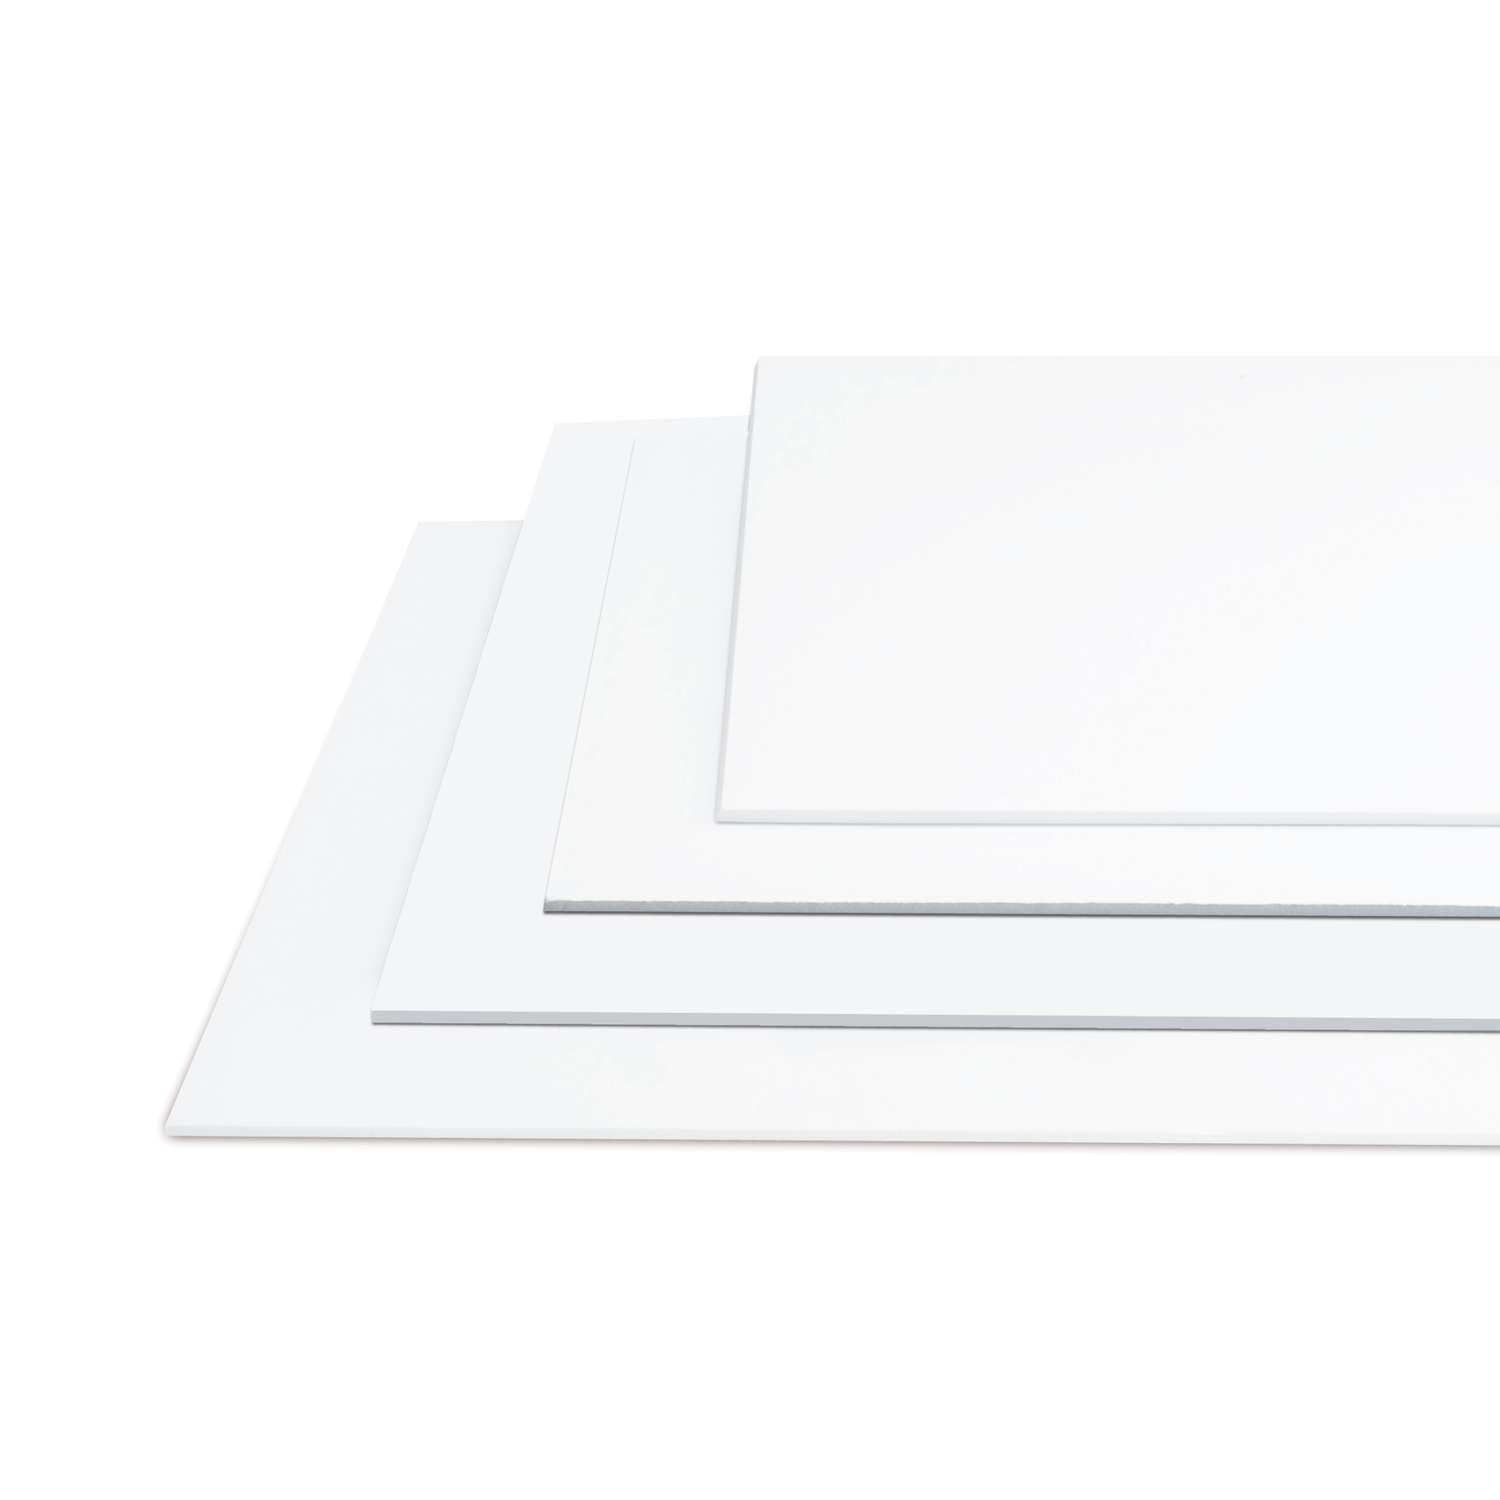 für Fotos und Präsentationen Schaumstoffplatte Leichtschaumplatte weiß selbstklebend 5mm stark alle Größen Foamboard DIN A2-10 Stück 